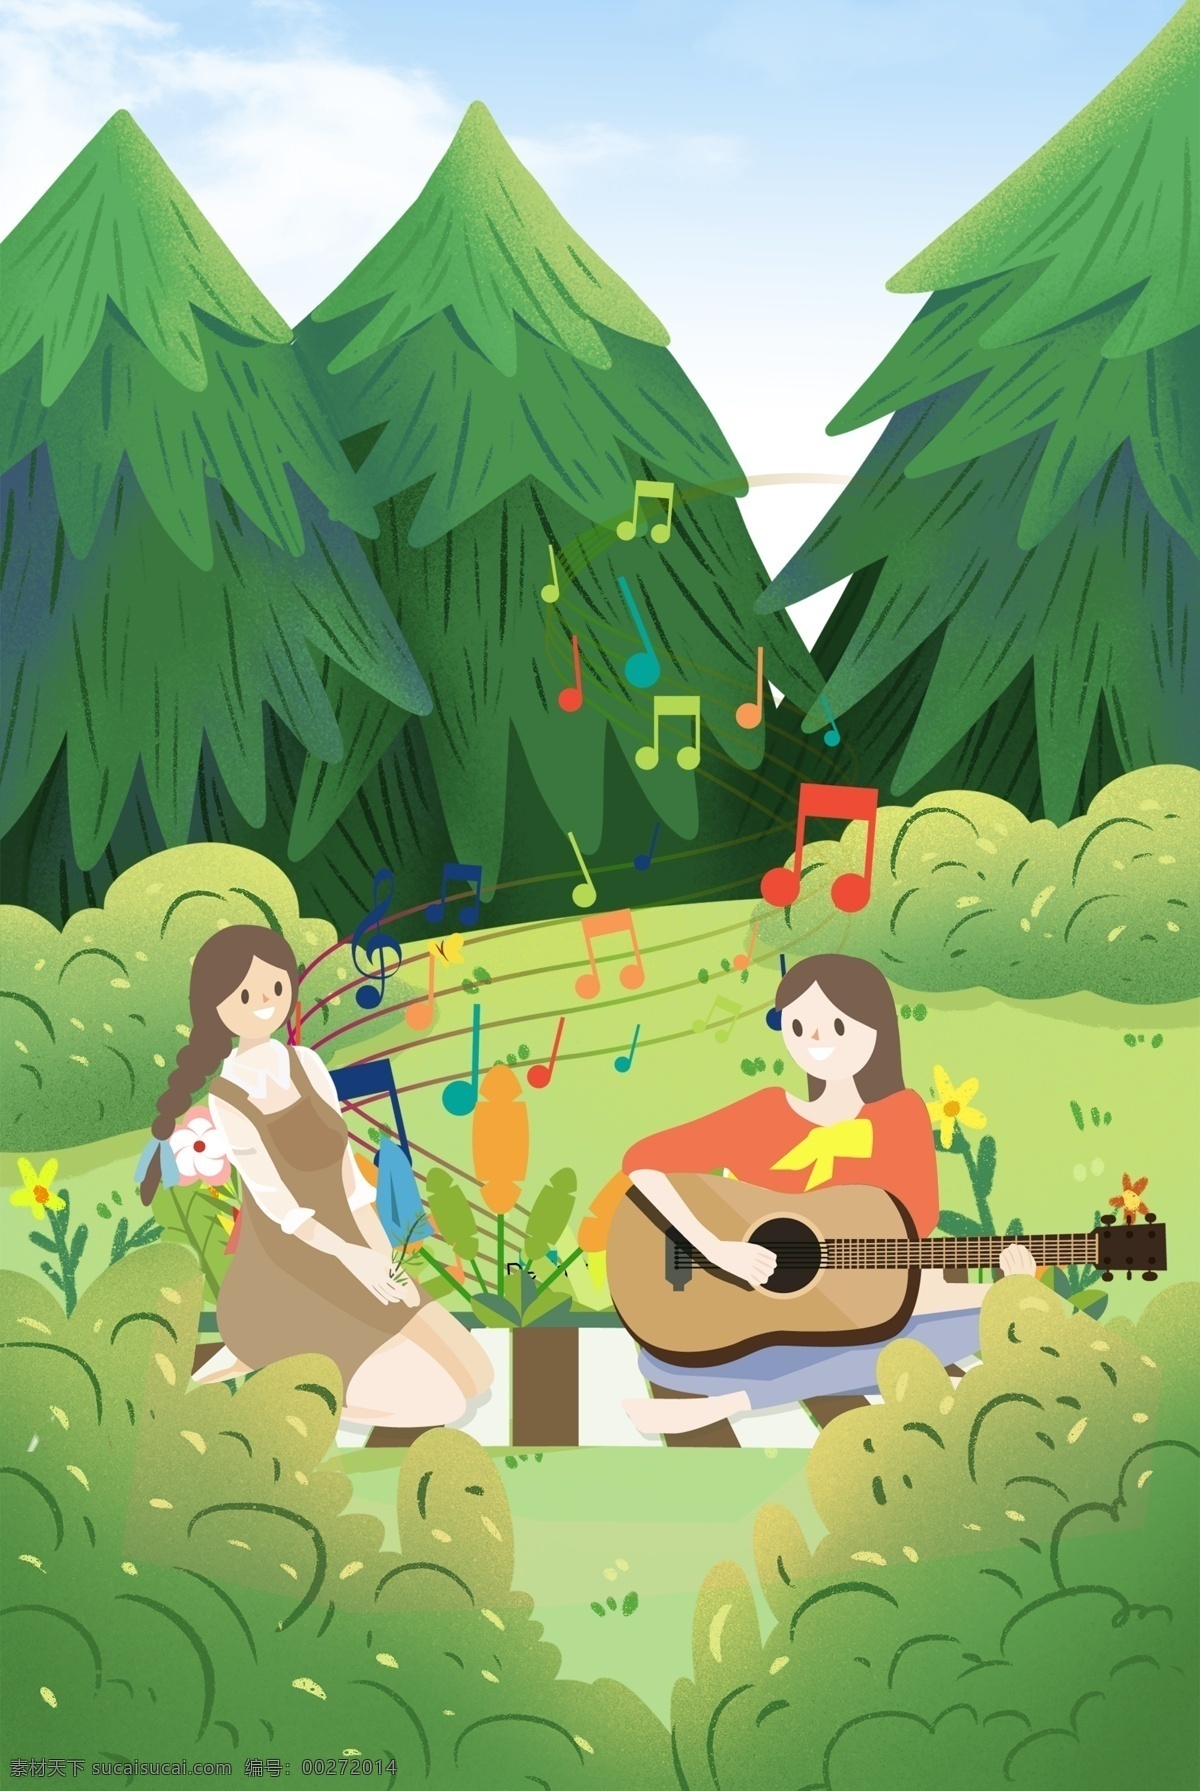 户外 协奏曲 音乐 海报 背景 野外 森林 花草树木 女孩 弹吉他 唱歌 歌唱 音符 律动